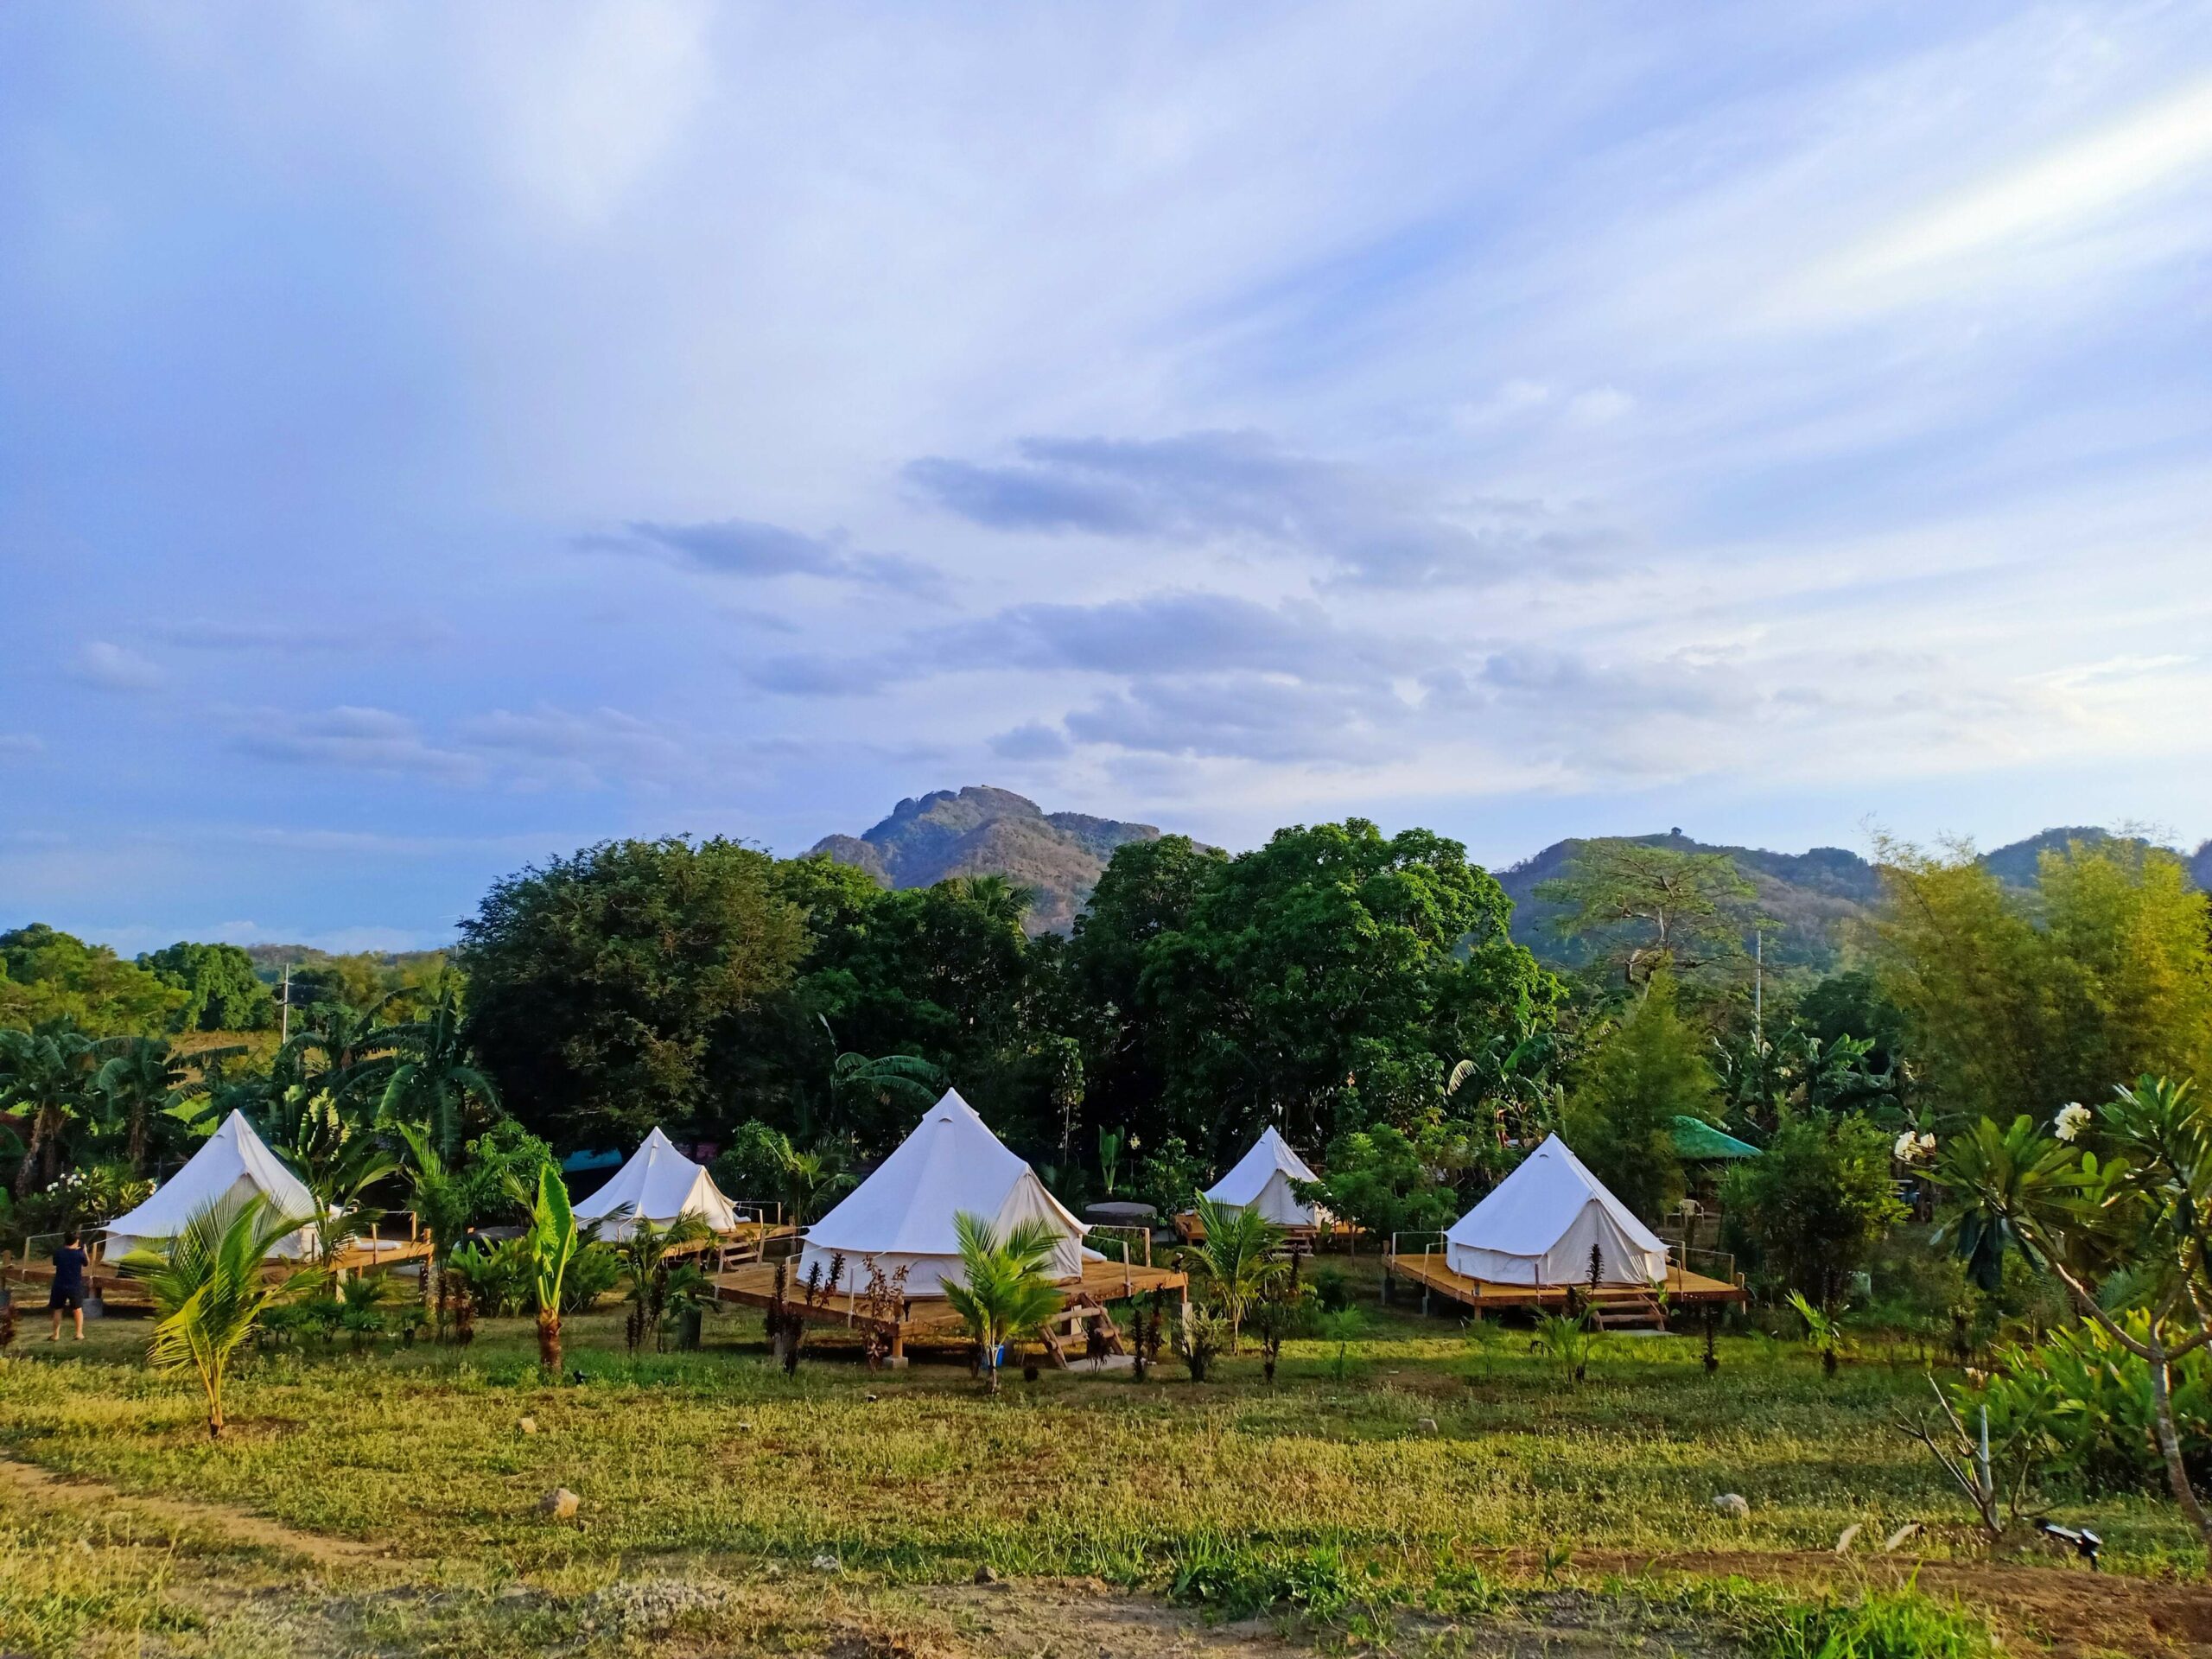 Kalika Balayan in Batangas - camp site with tents